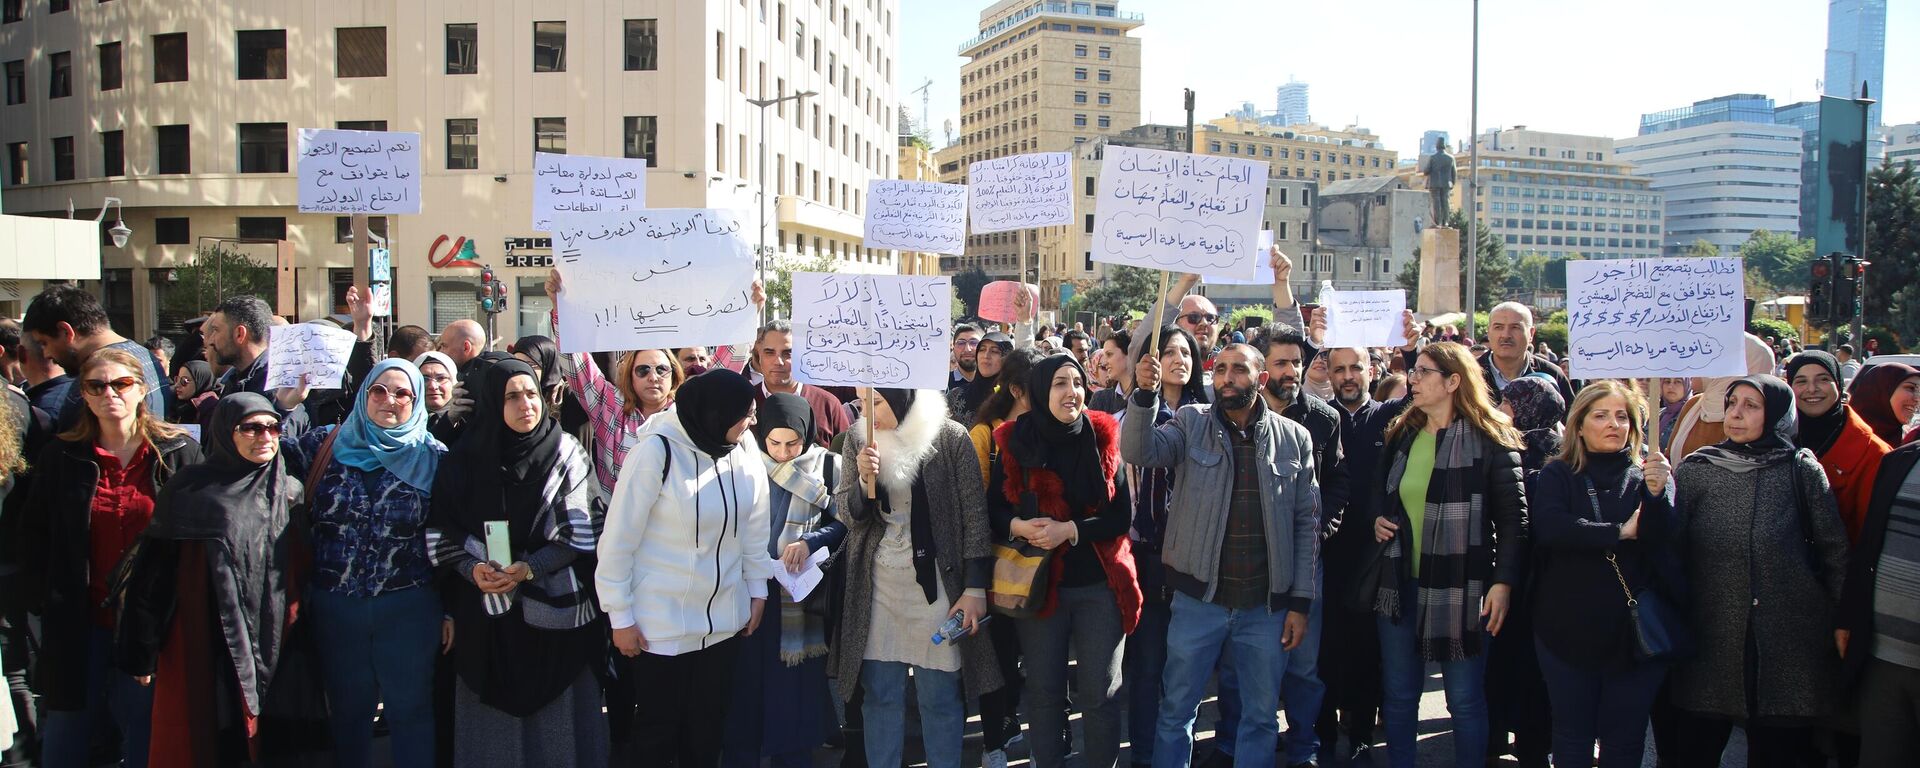 إضراب أساتذة لبنان يدخل أسبوعه الثاني وإرتفاع وتيرة الإحتجاجات لرفع الظلم وتحقيق الإنصاف وإنقاذ مصير الطلاب - سبوتنيك عربي, 1920, 31.01.2023